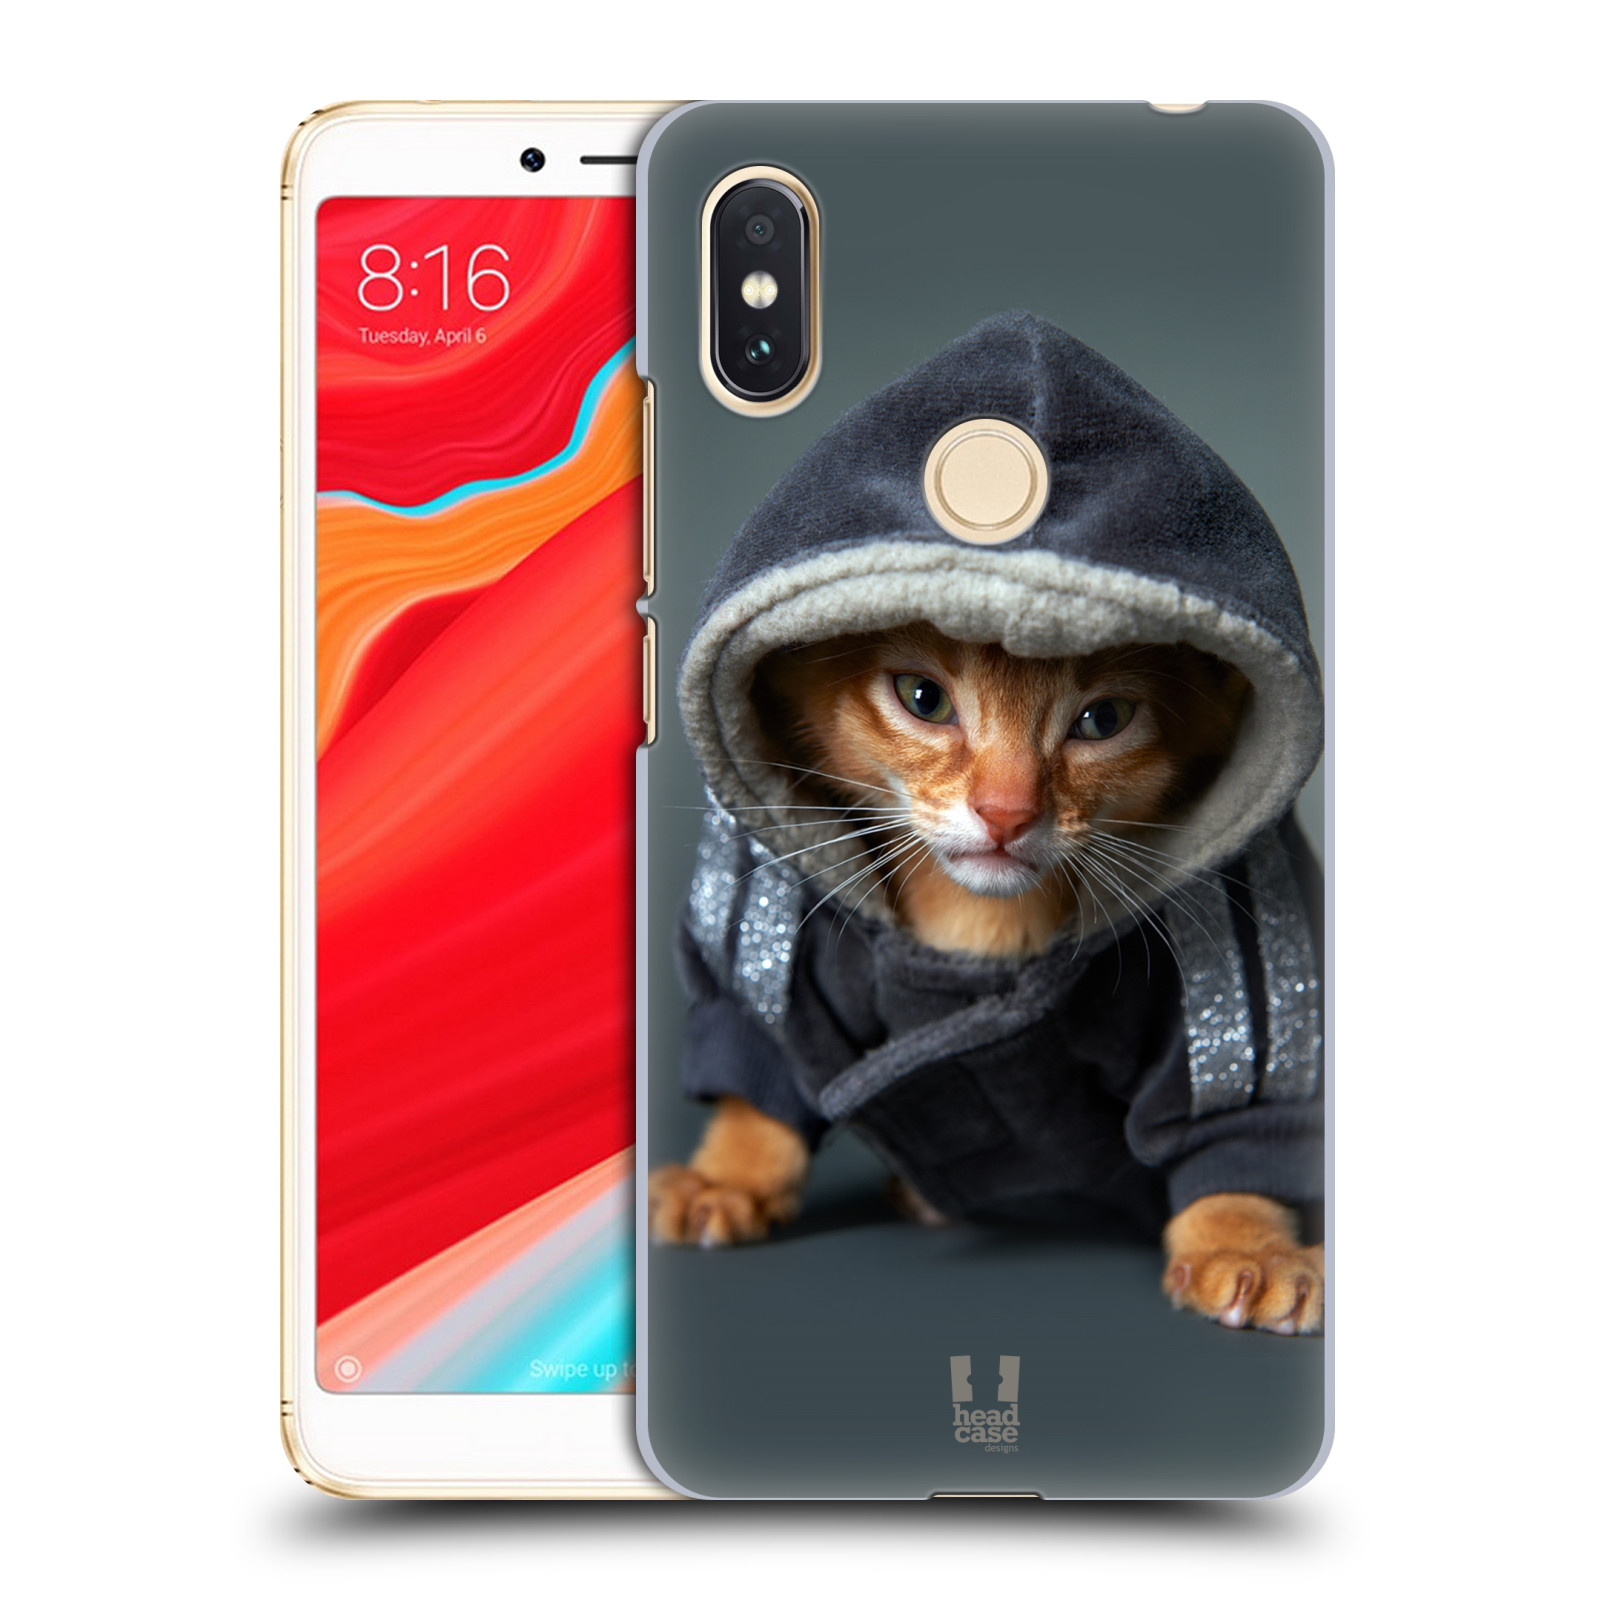 HEAD CASE plastový obal na mobil Xiaomi Redmi S2 vzor Legrační zvířátka kotě/kočička s kapucí